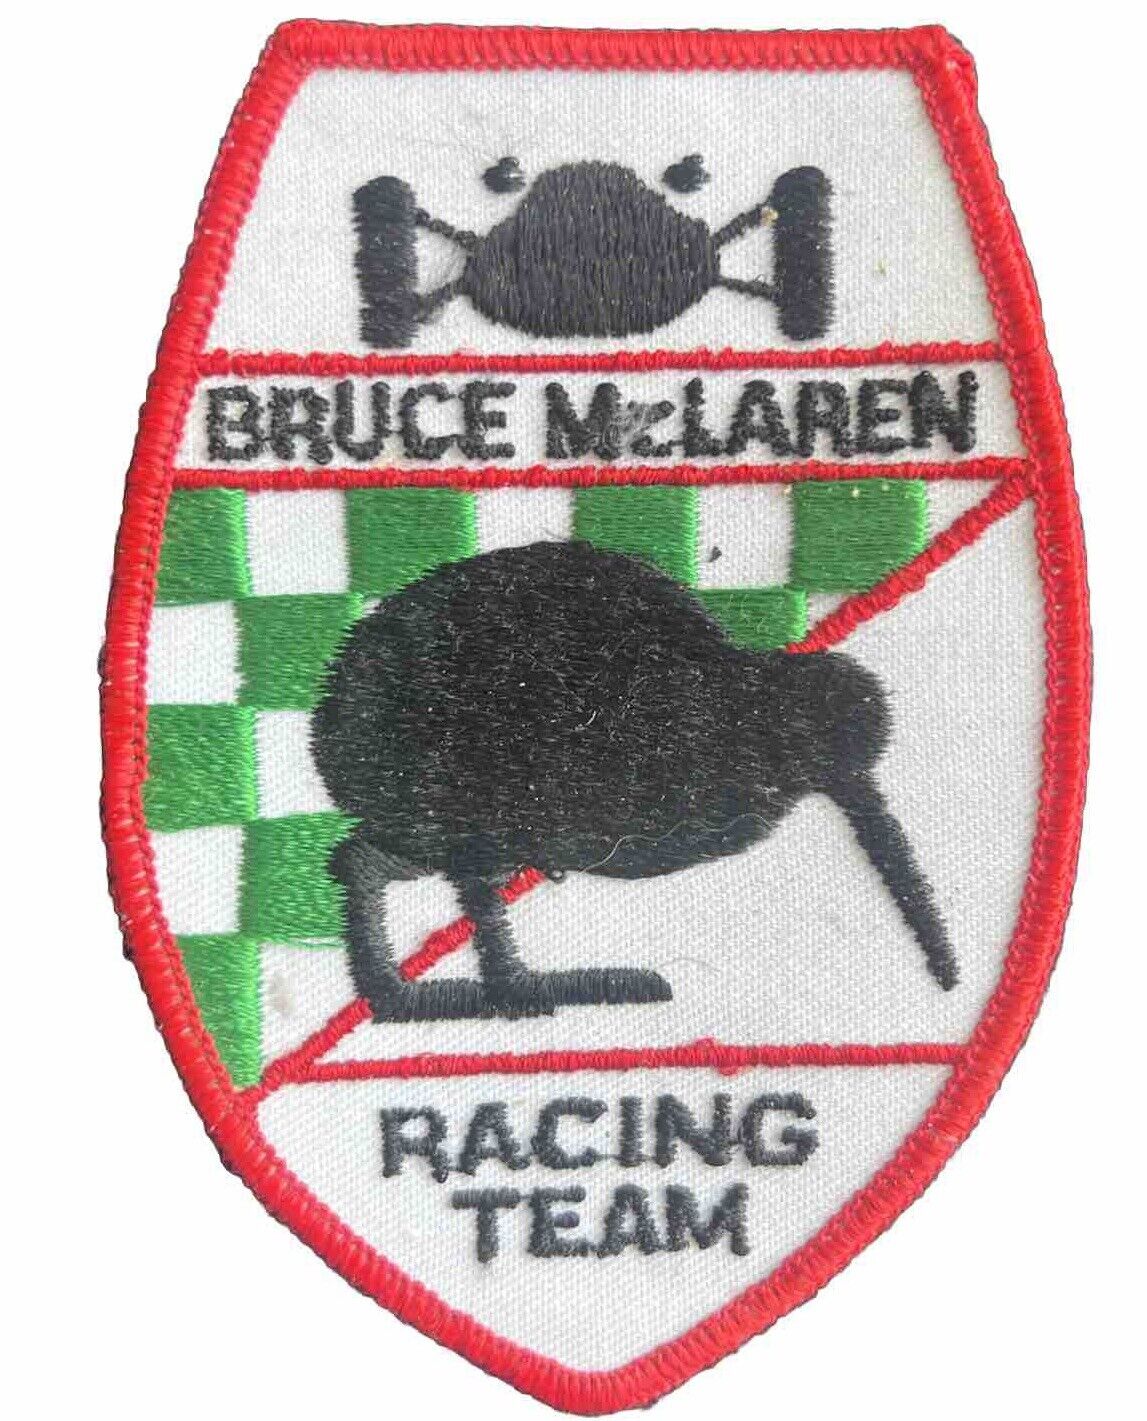 Bruce McLaren Motor Racing Team Jacket Patch